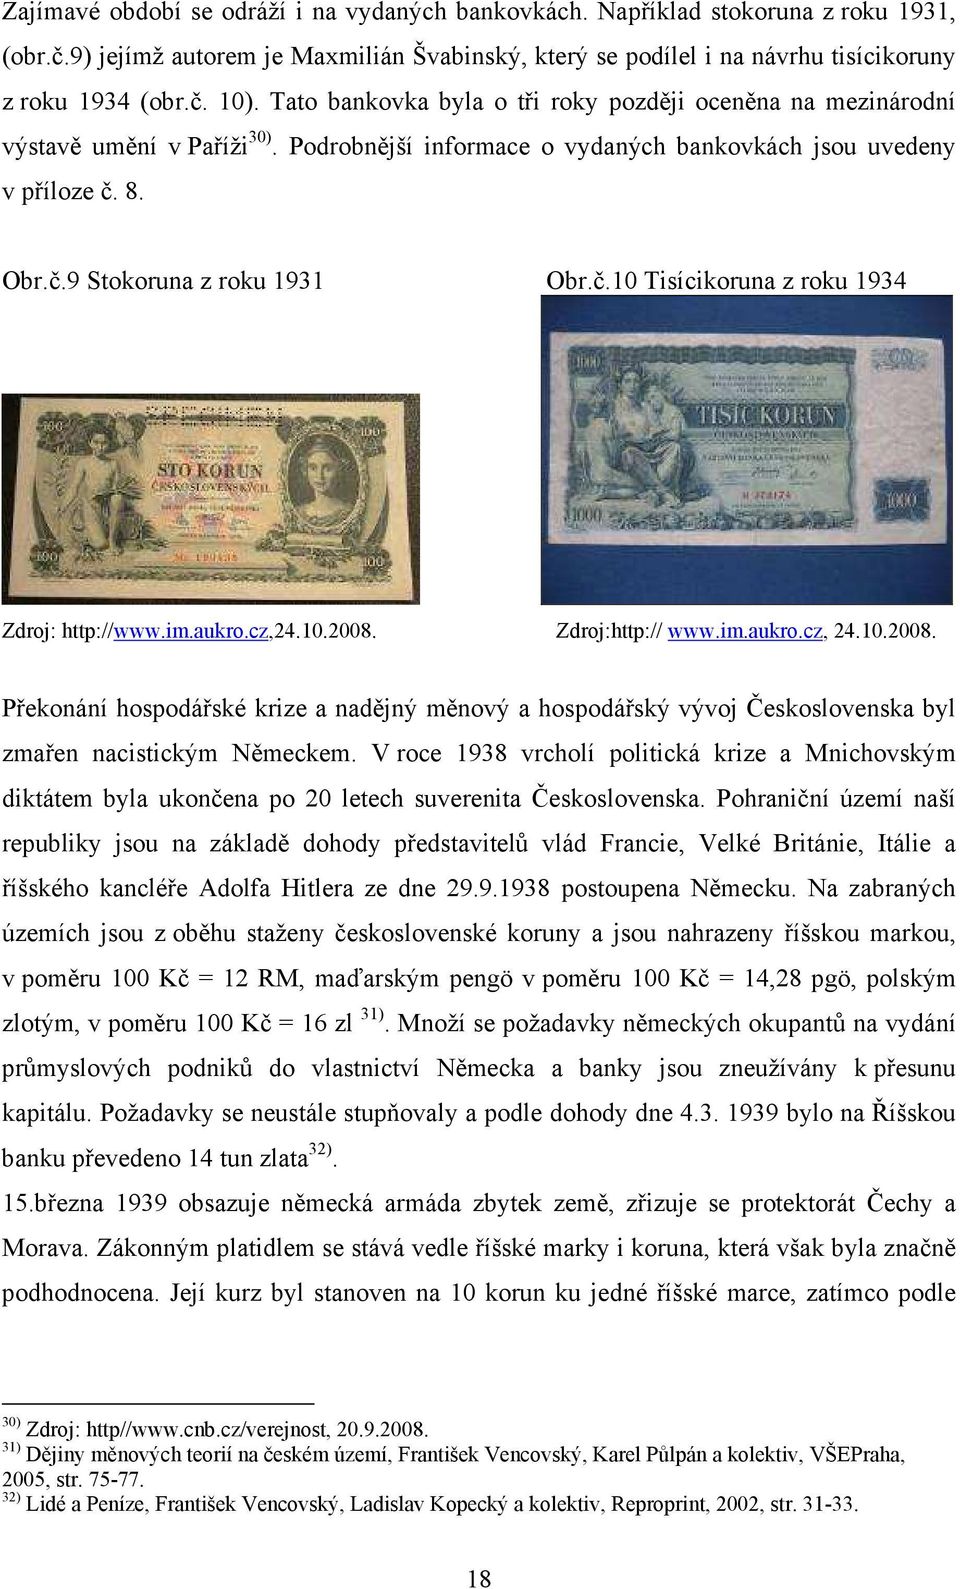 8. Obr.č.9 Stokoruna z roku 1931 Obr.č.10 Tisícikoruna z roku 1934 Zdroj: http://www.im.aukro.cz,24.10.2008.